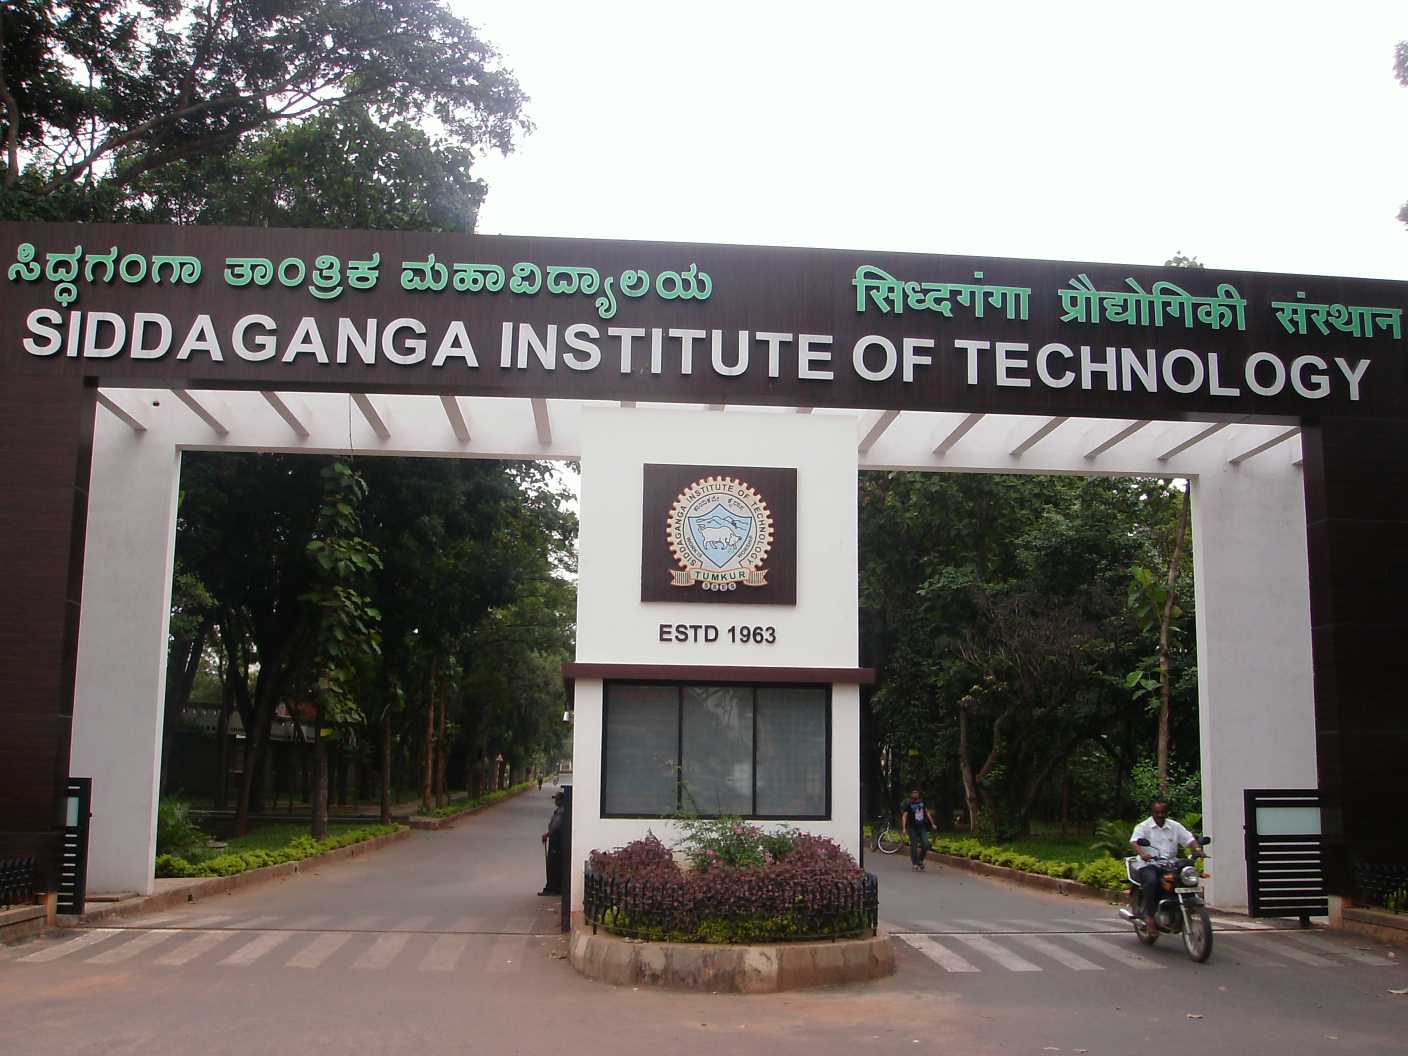 Siddaganga Institute of Technology - MBA Image